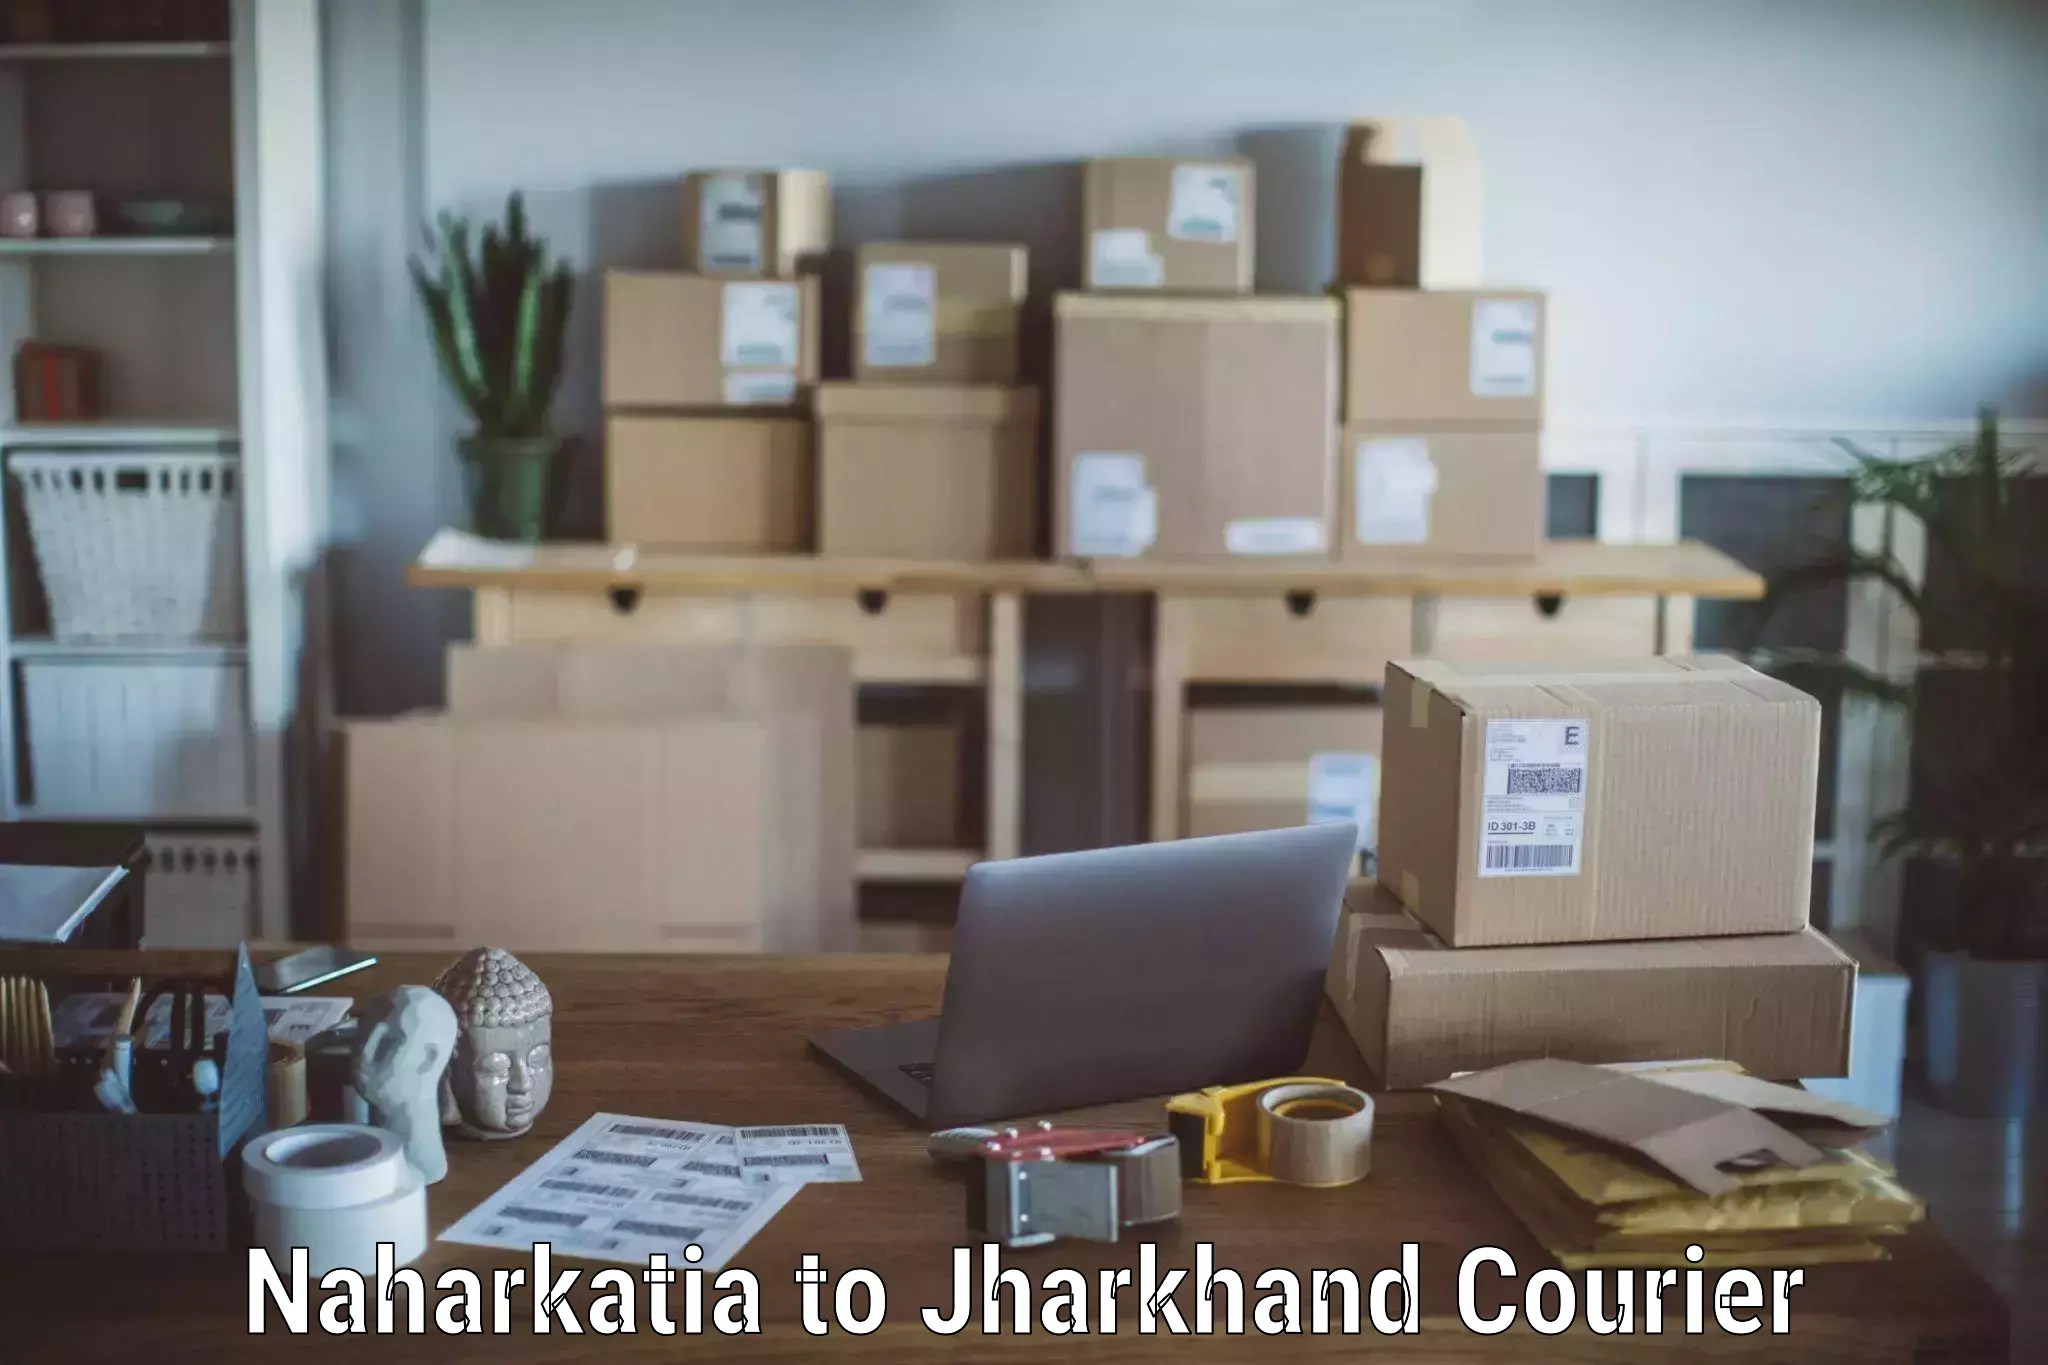 Furniture delivery service Naharkatia to NIT Jamshedpur